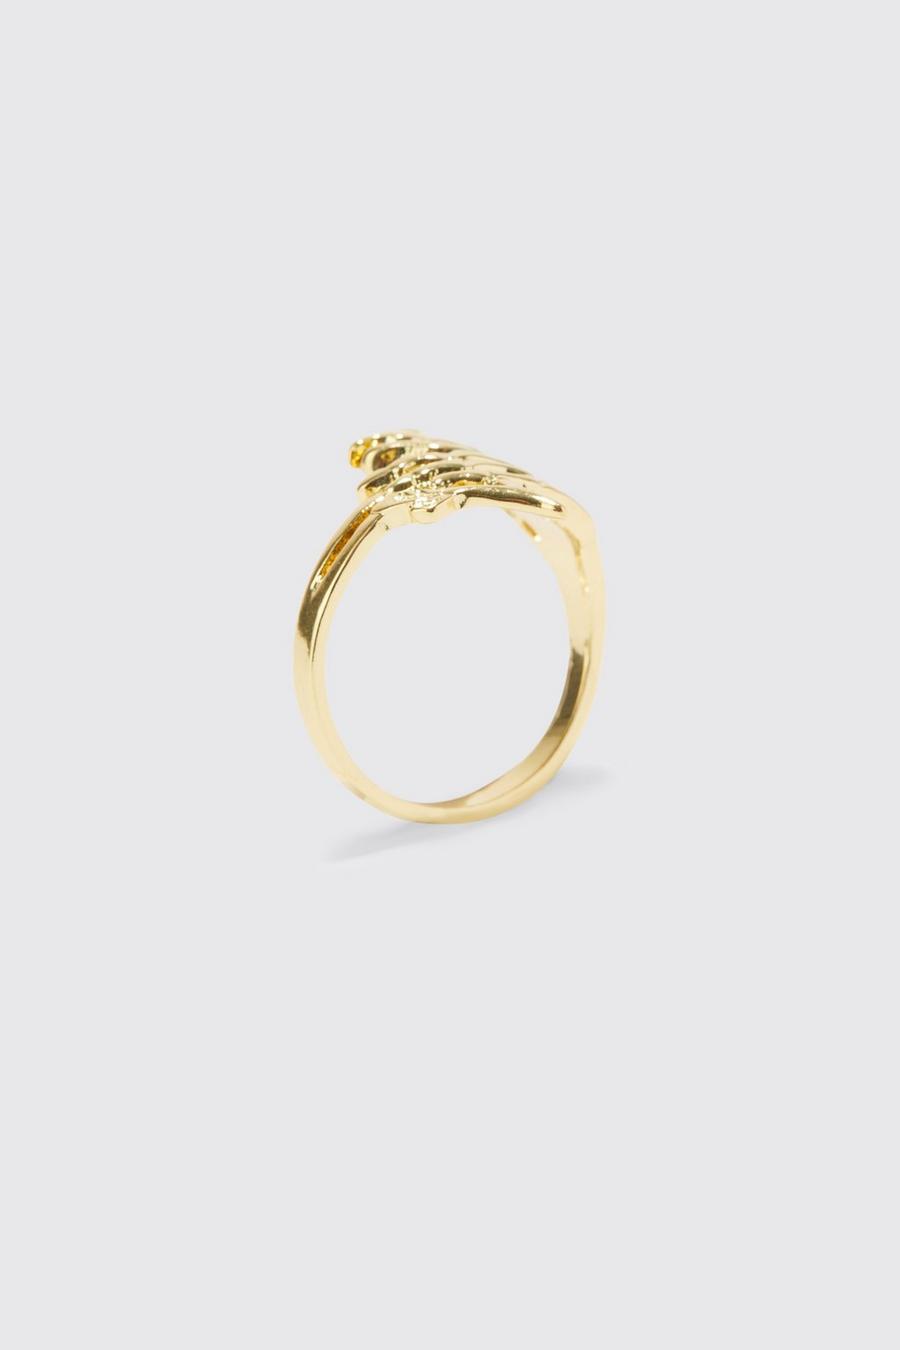 Gold metallic Skeleton Hand Ring